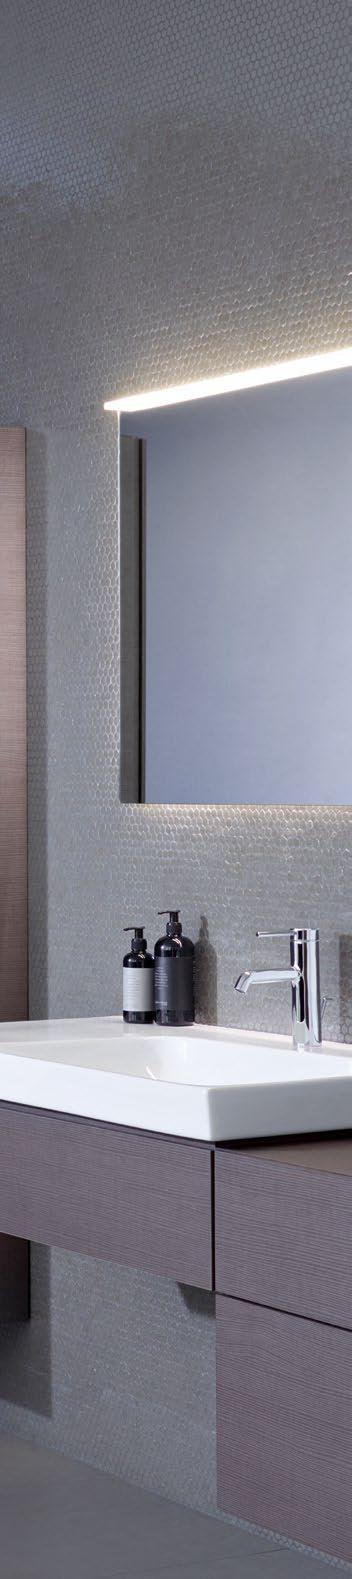 NYHET GEBERIT AQUACLEAN SELA INTELLIGENT SKÖNHET Med sin rena och eleganta design har Geberit AquaClean Sela vad som krävs för att bli en favorit.